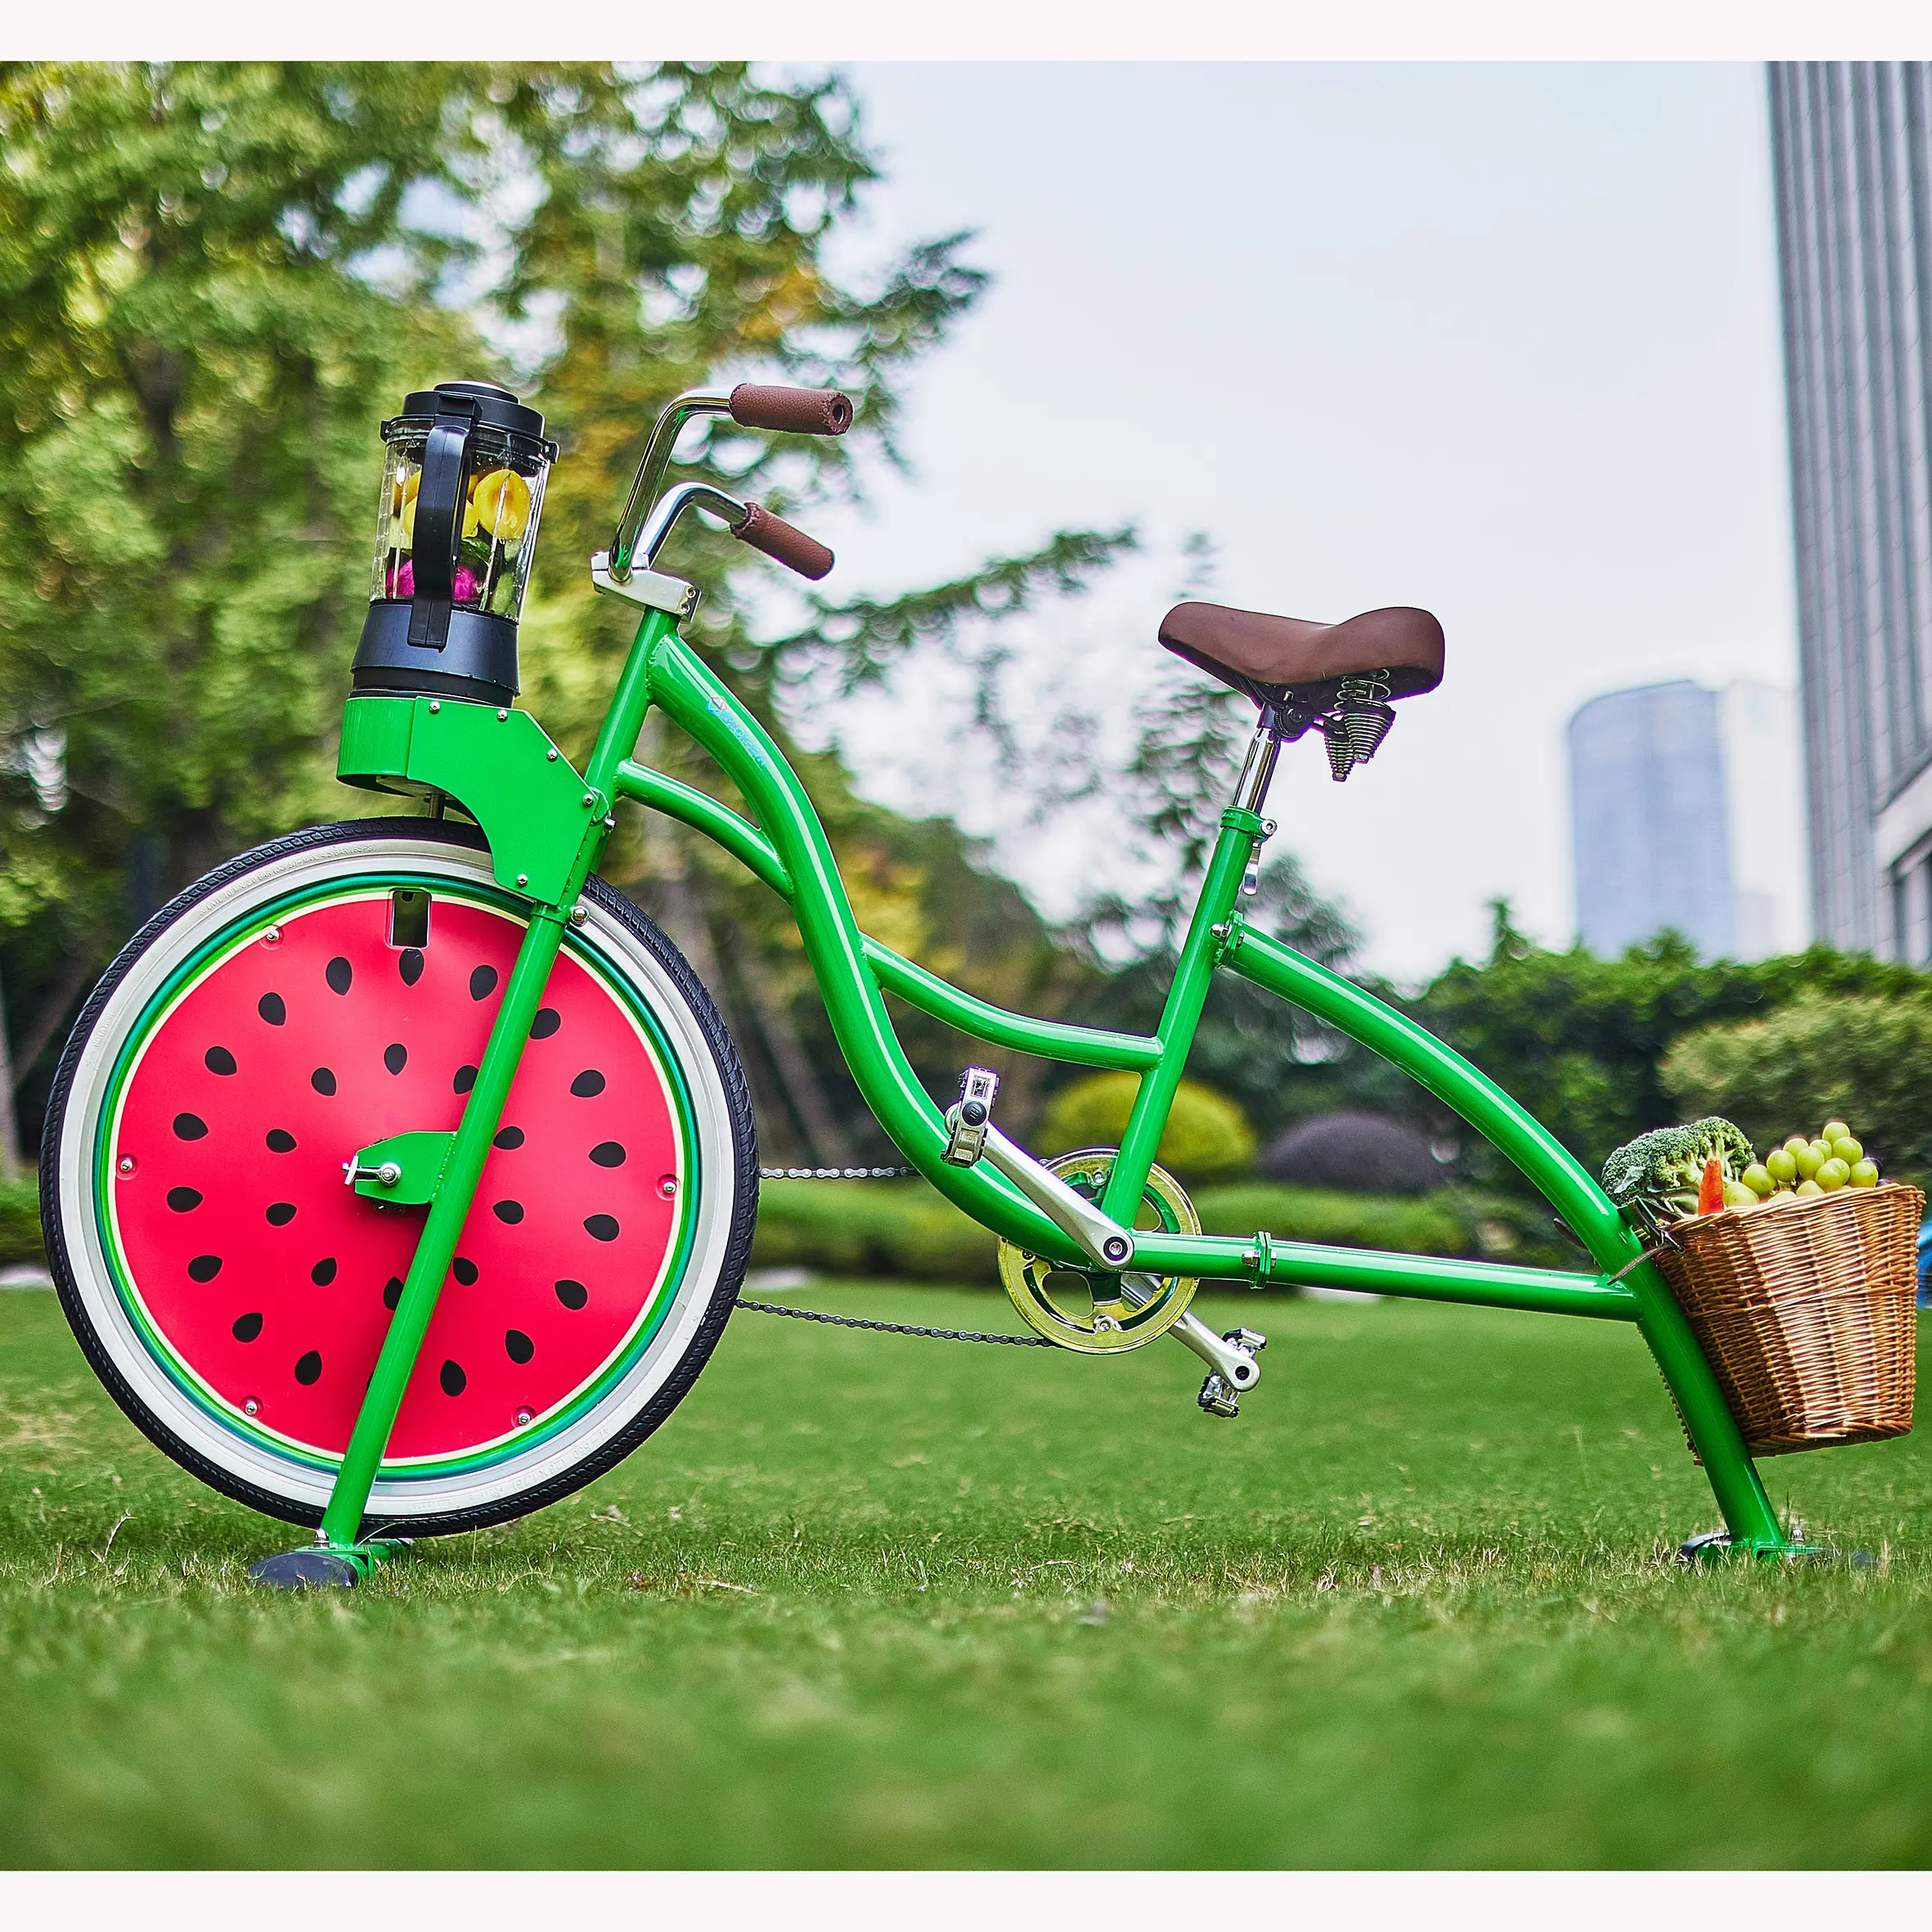 EXIニューパーティーグレープフルーツブレンダー自転車フルーツ野菜固定ペダルサイクリングサイクルパブスムージーその他の自転車